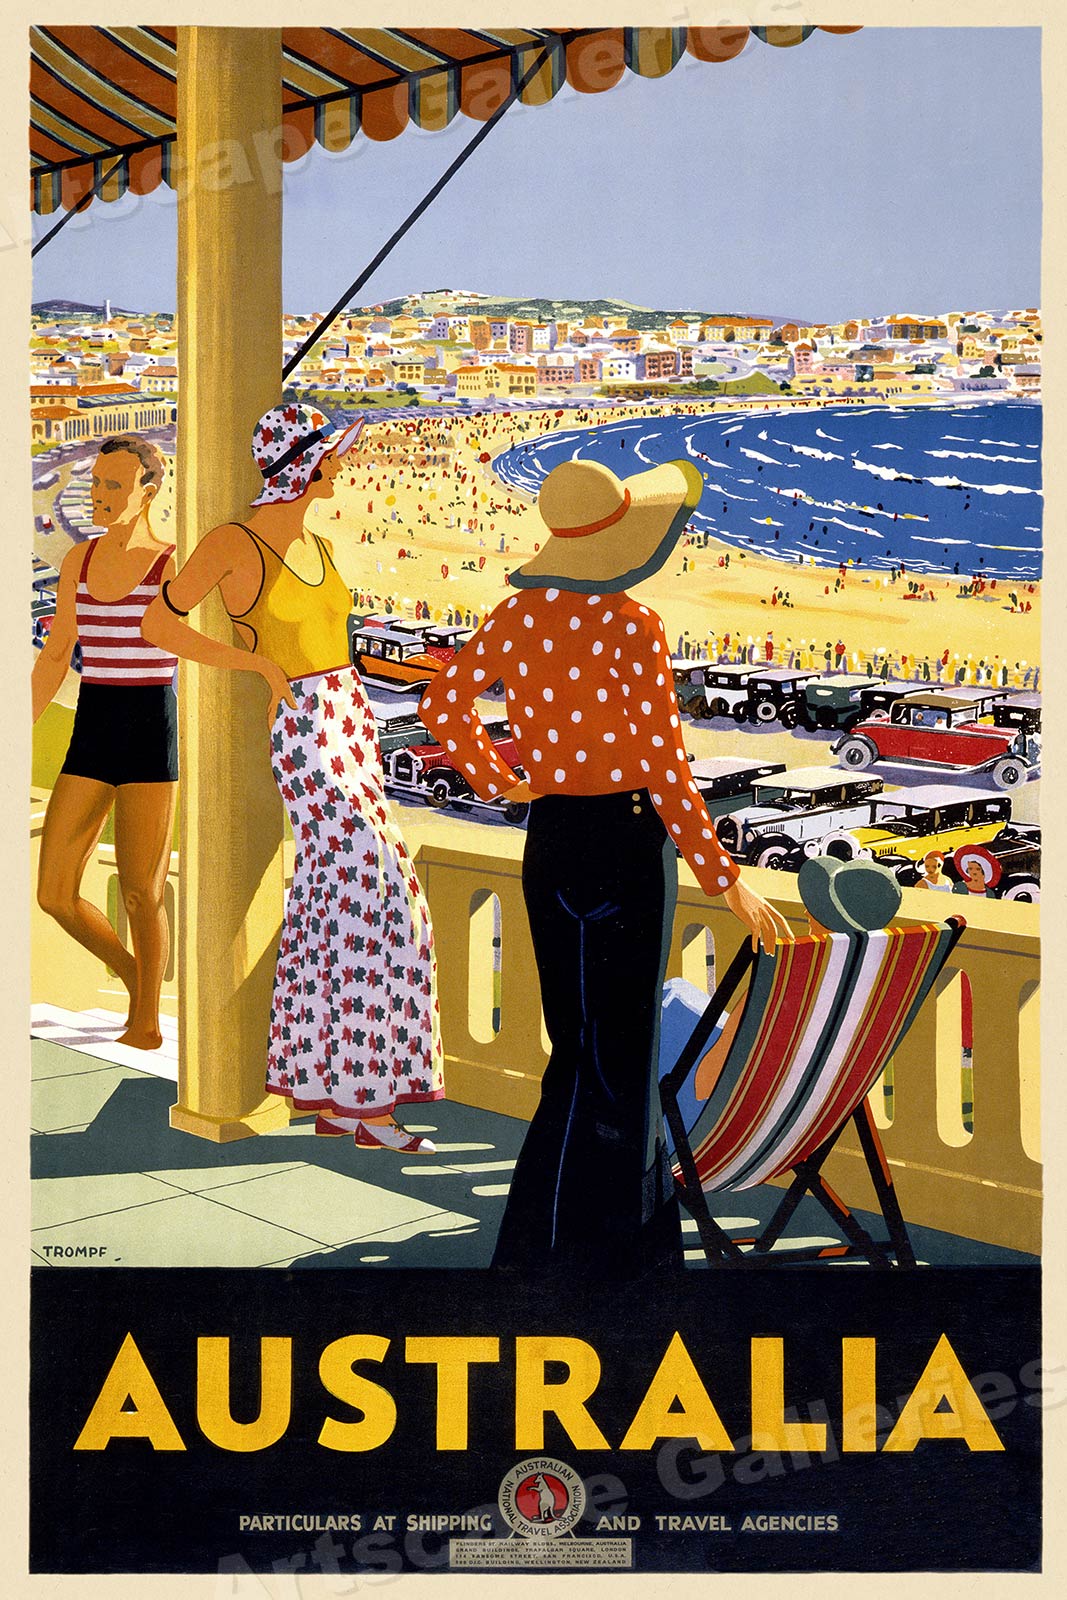 1930s Bondi Beach Sydney Australia Vintage Style Travel Poster - 16x24